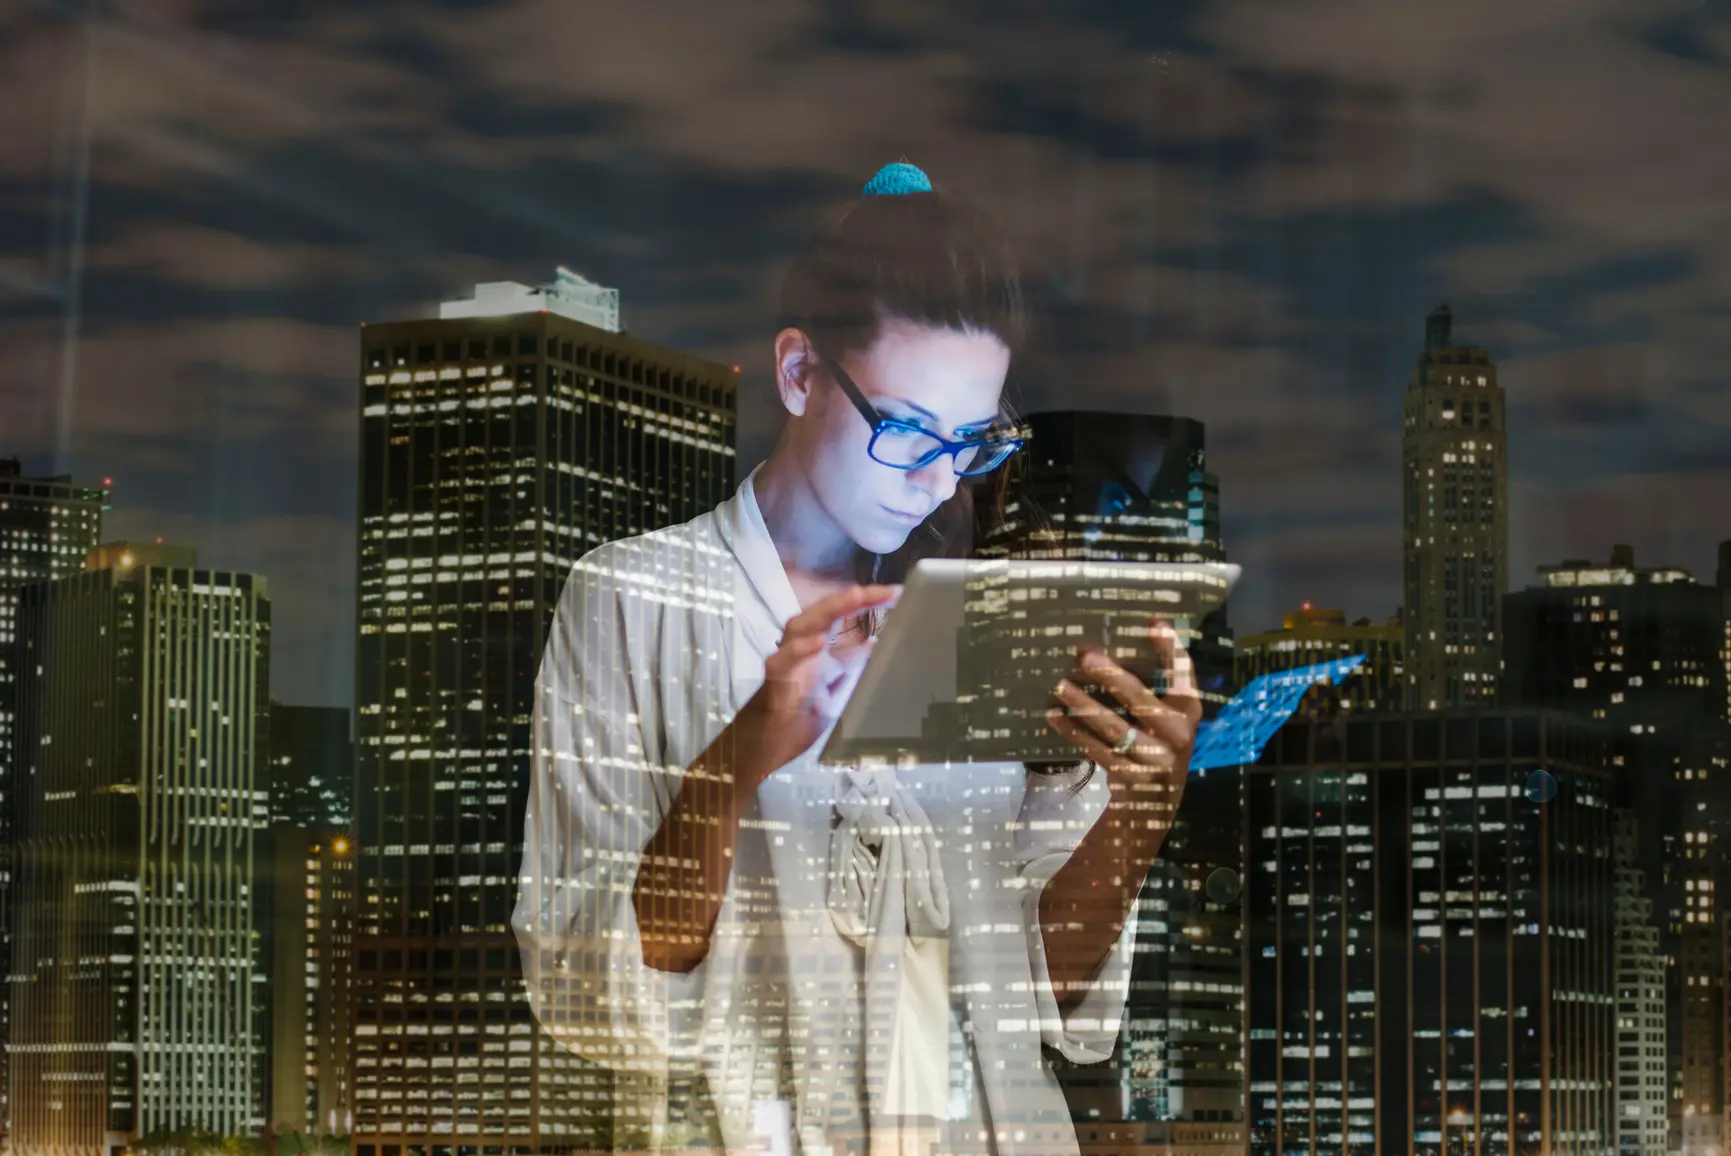 Eine Frau schaut nachts auf ihr Tablet, im Hintergrund ist die Skyline einer Stadt zu sehen.